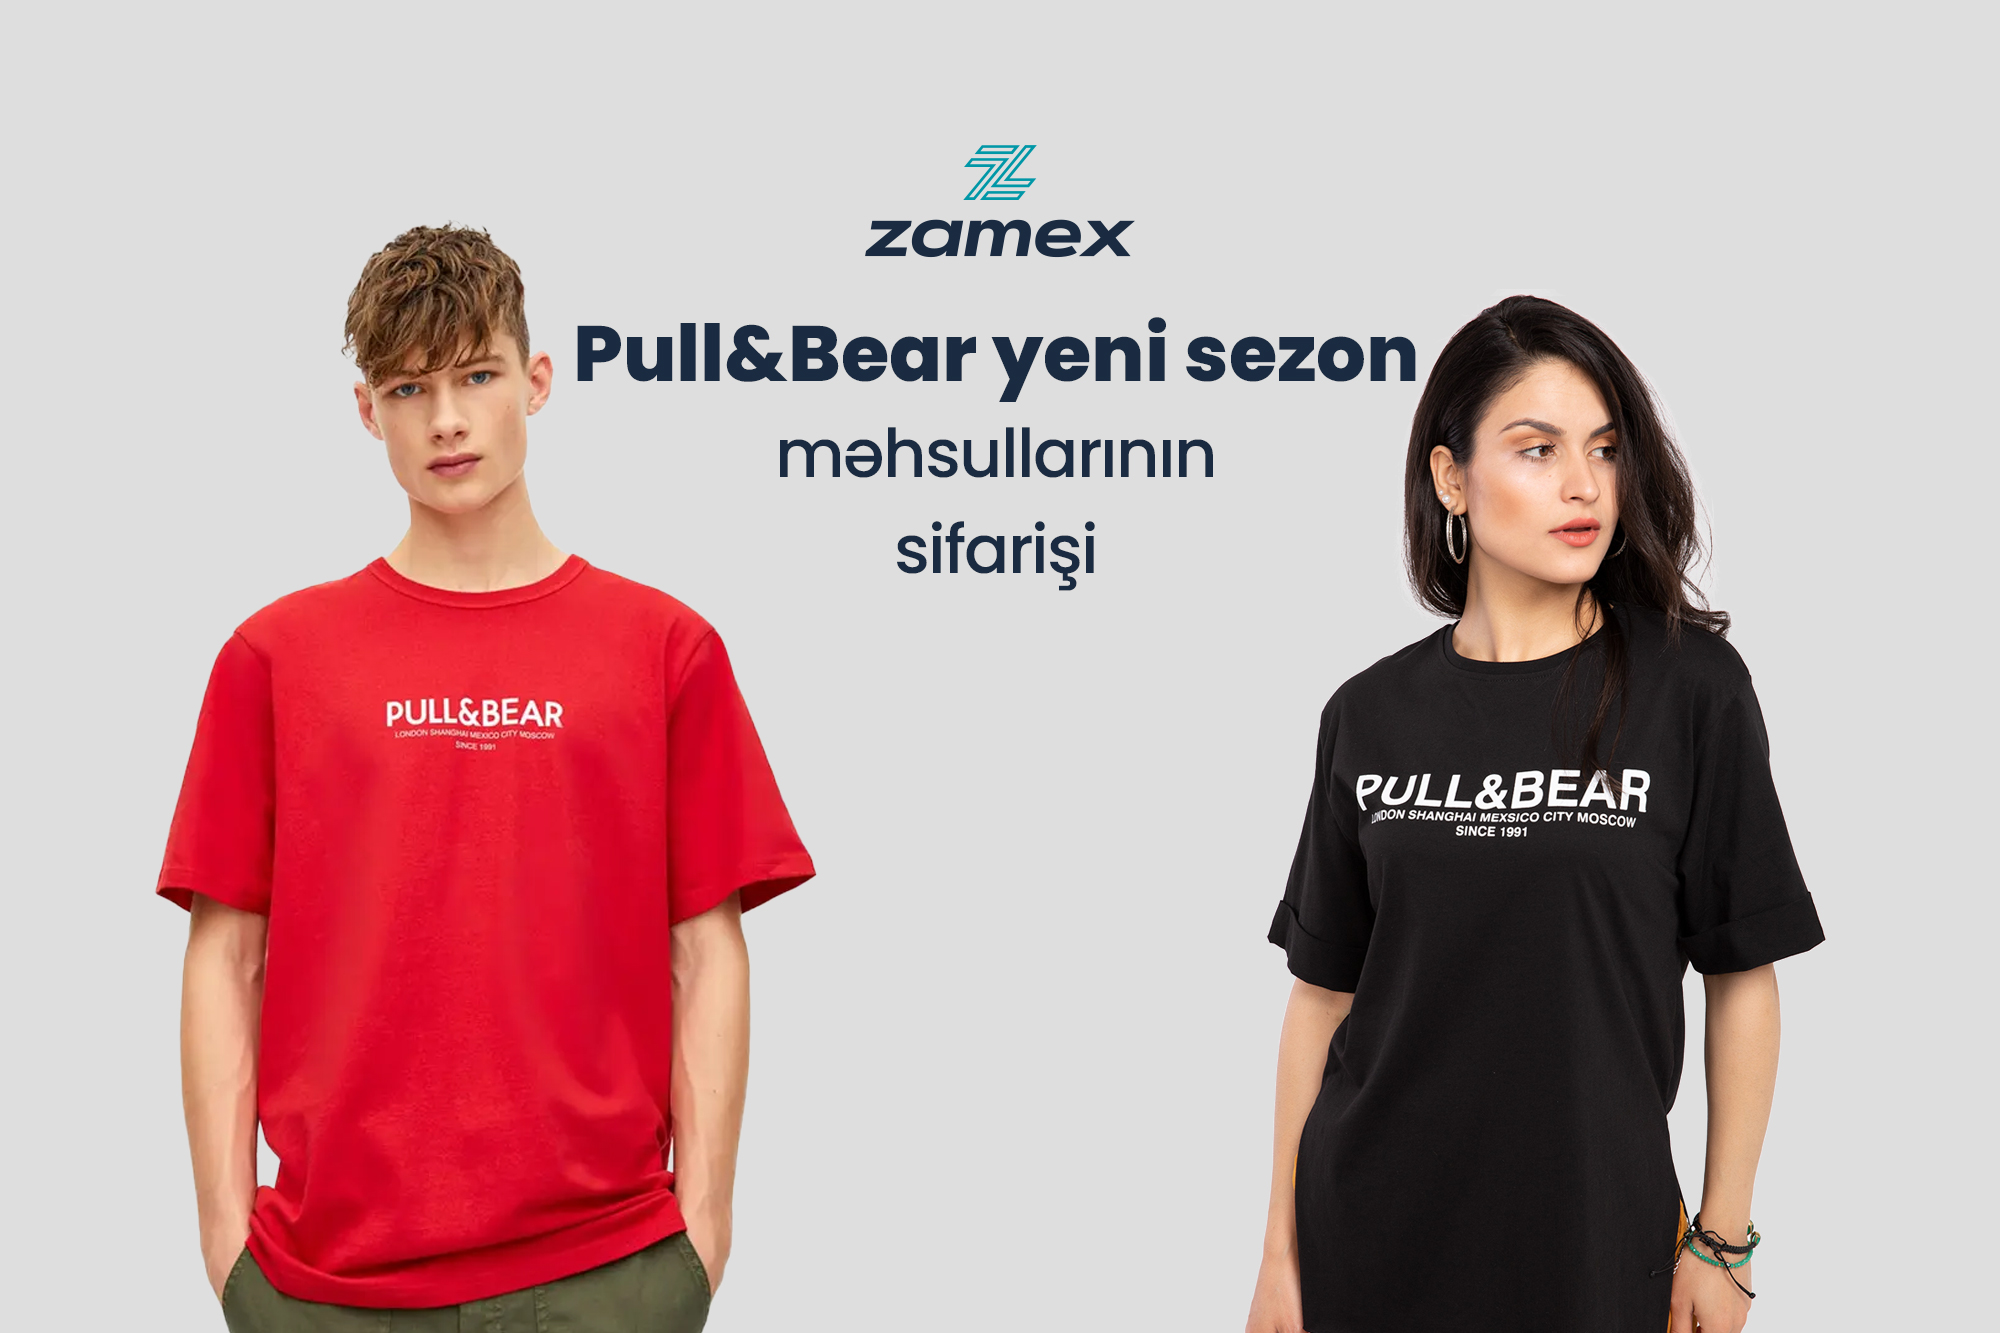 Pull&Bear yeni sezon məhsullarının sifarişi